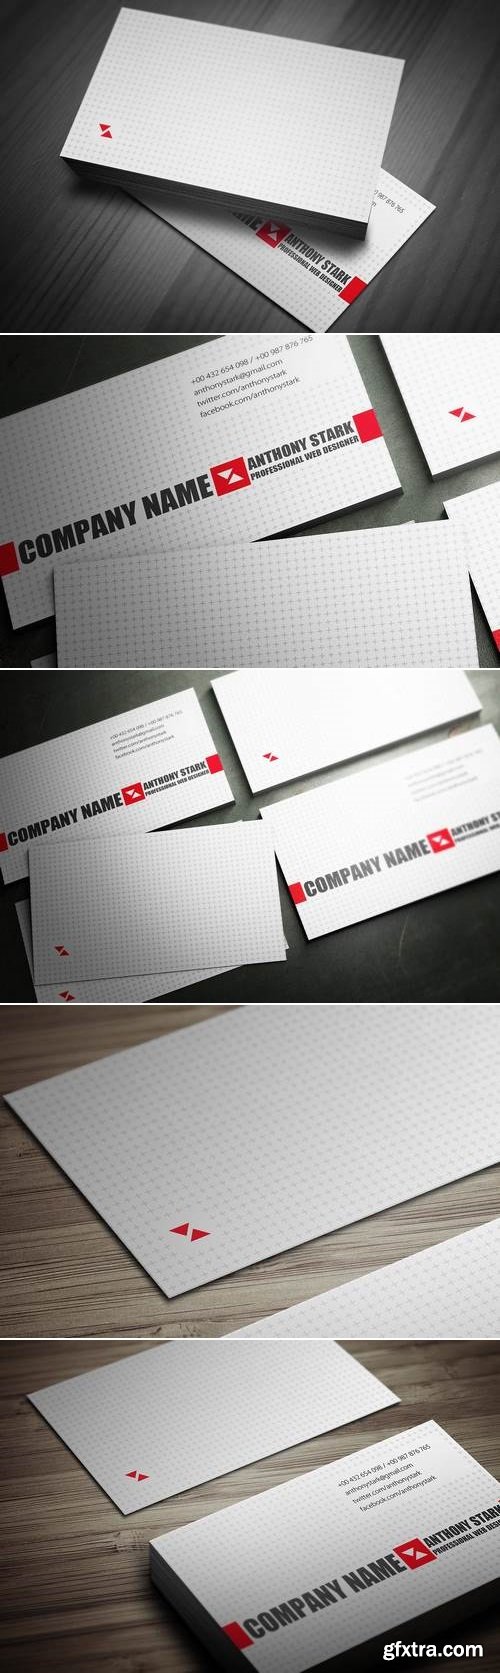 Light Business Card Design